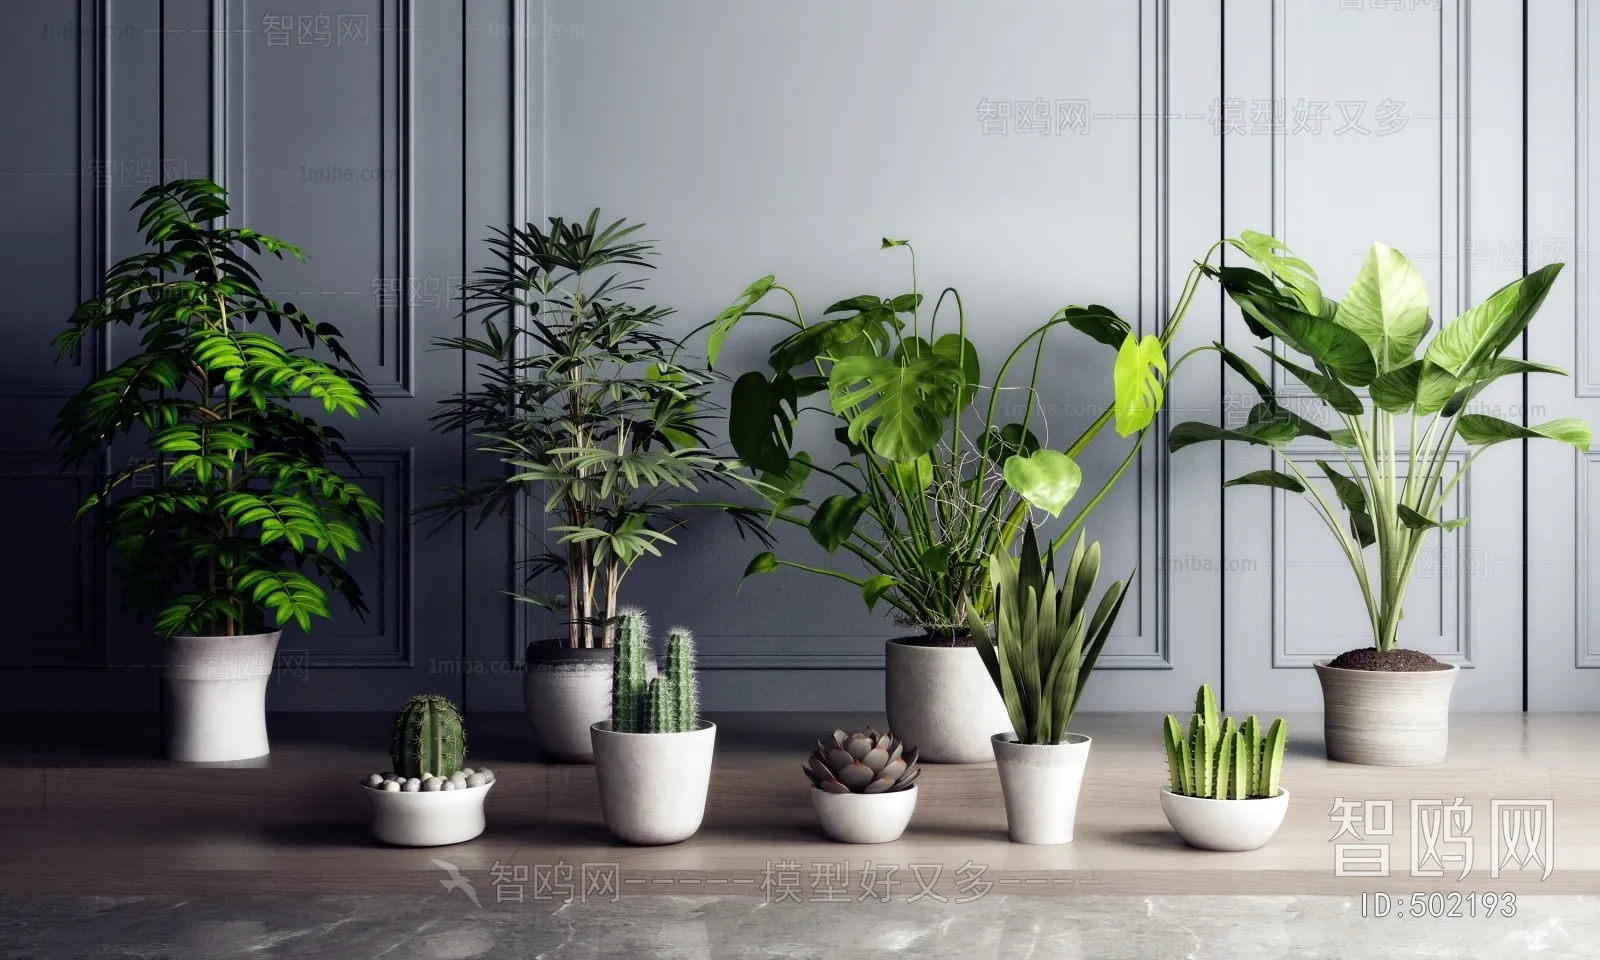 PLANT 3D MODELS – 021